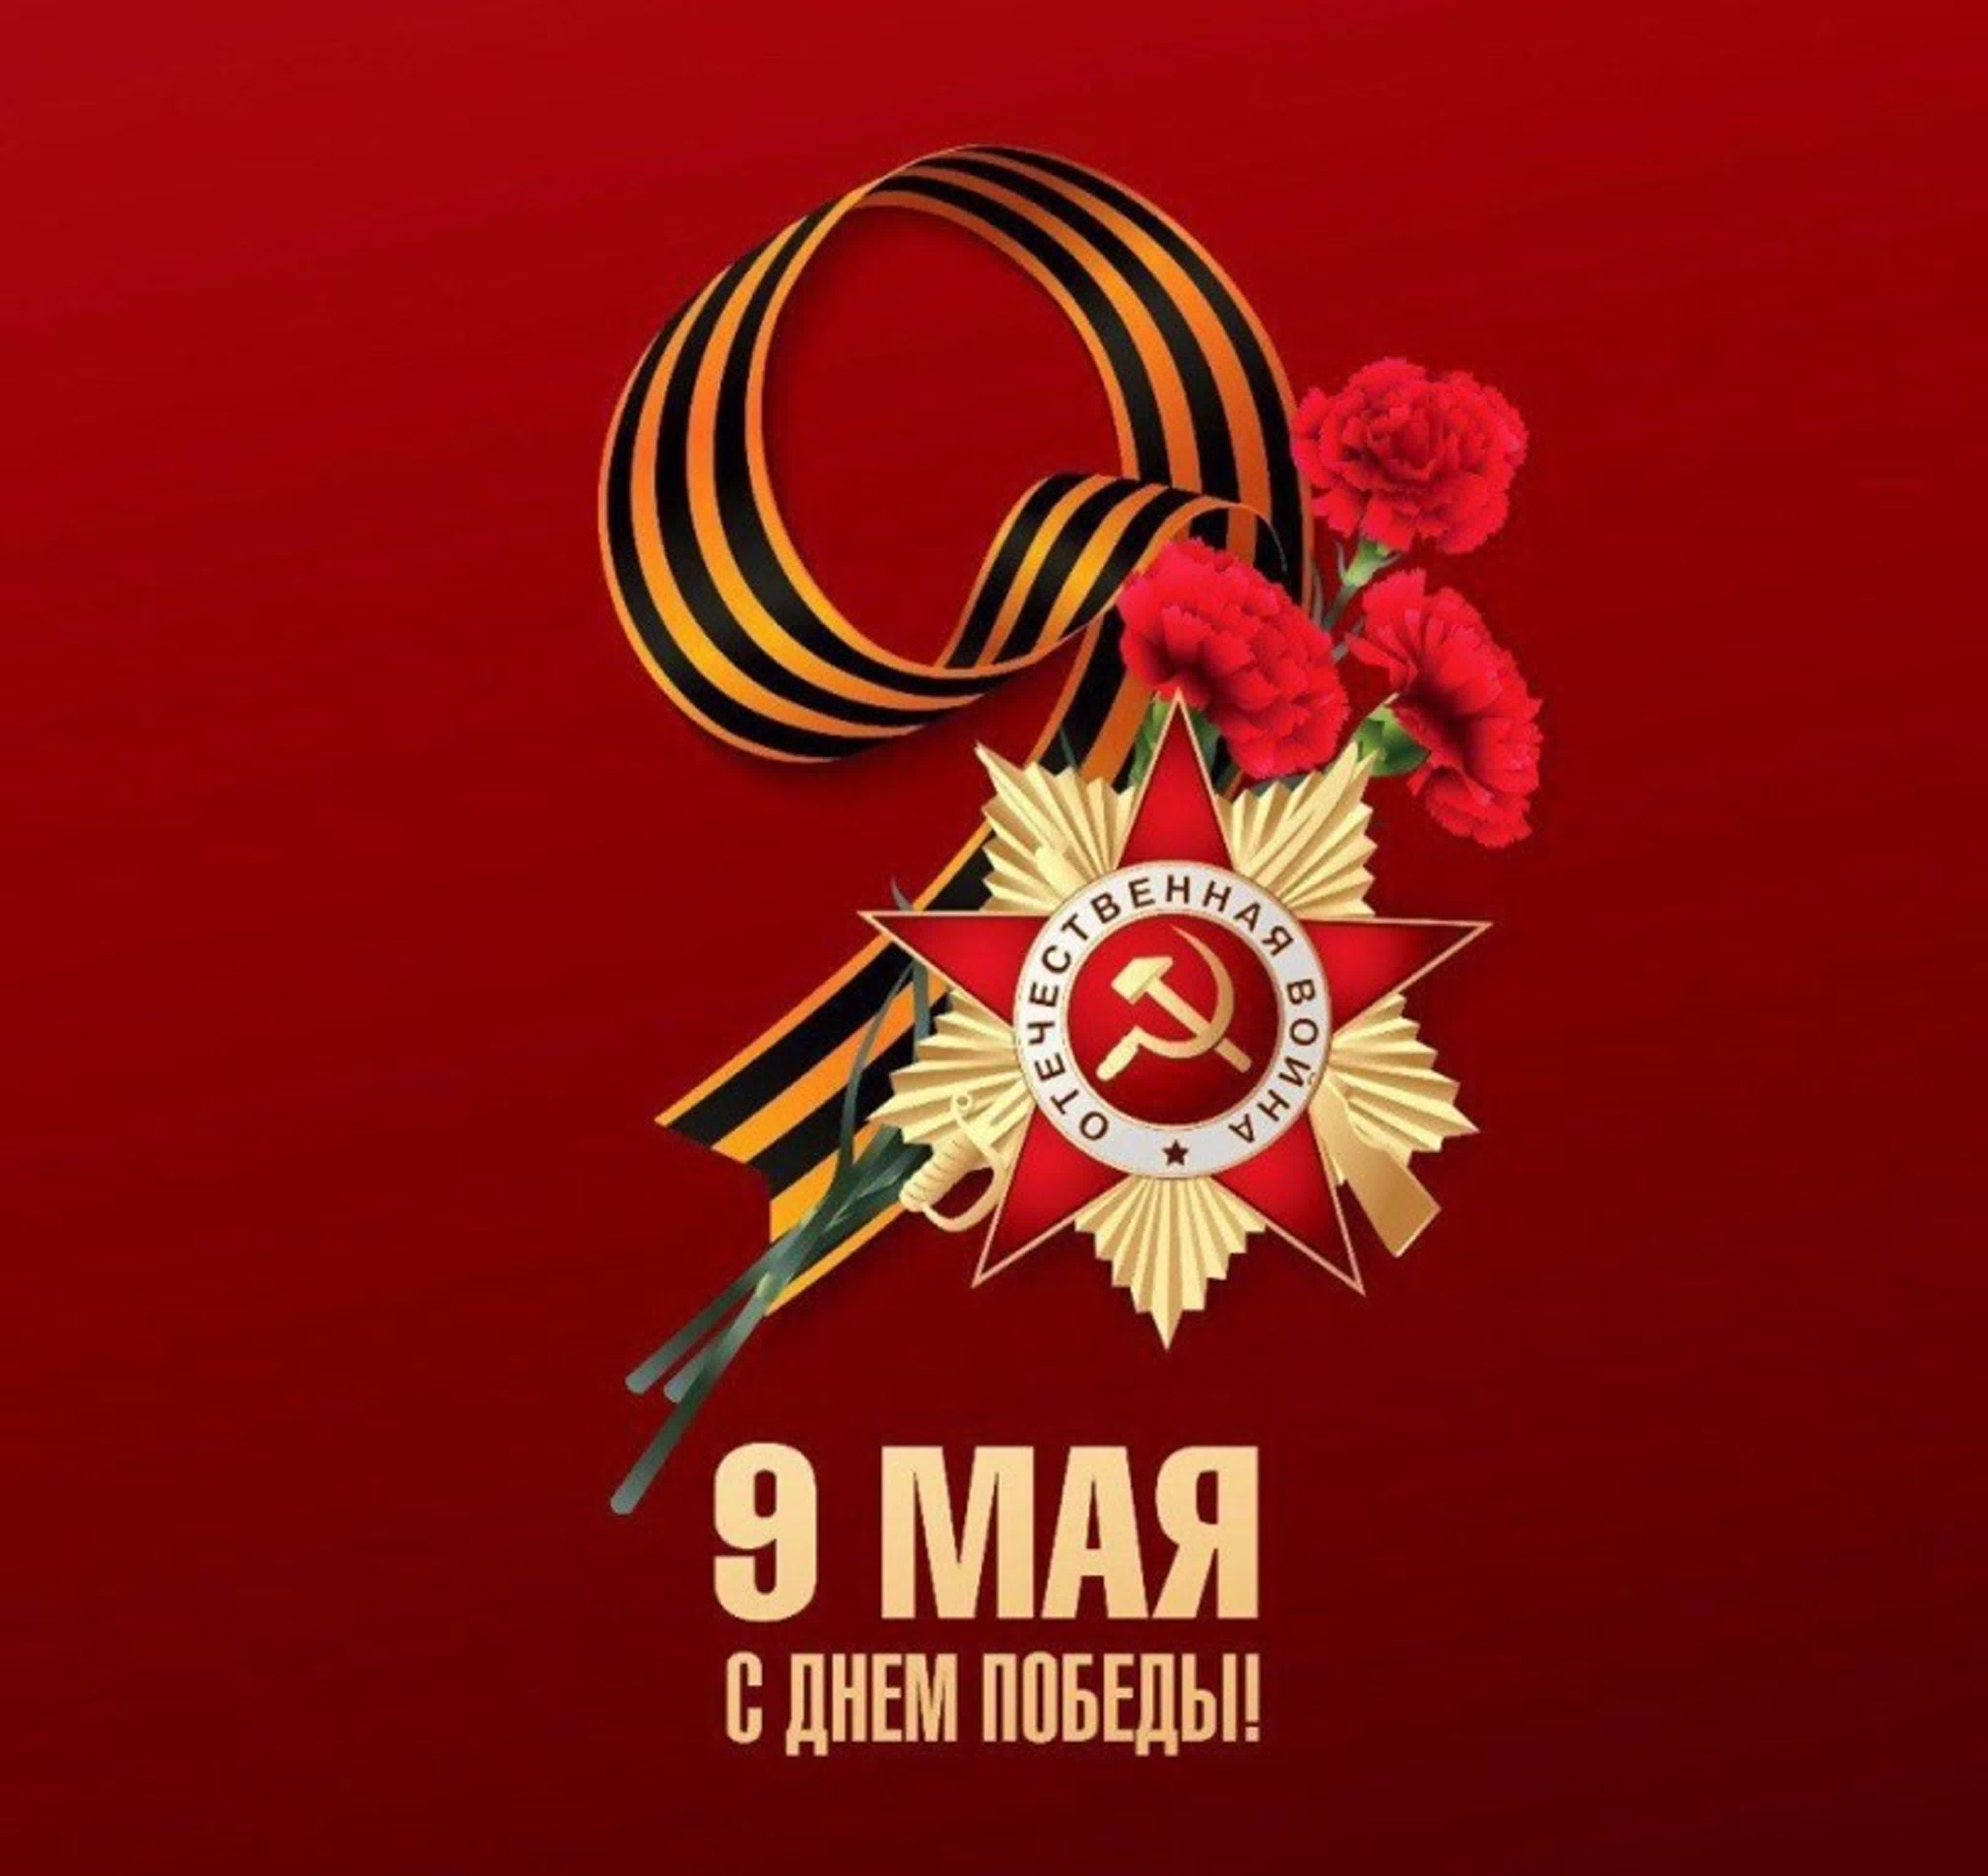 9 мая будет праздник день победы. С днем Победы. Поздравление с 9 мая. Deni pobedi. Открытка "9 мая".